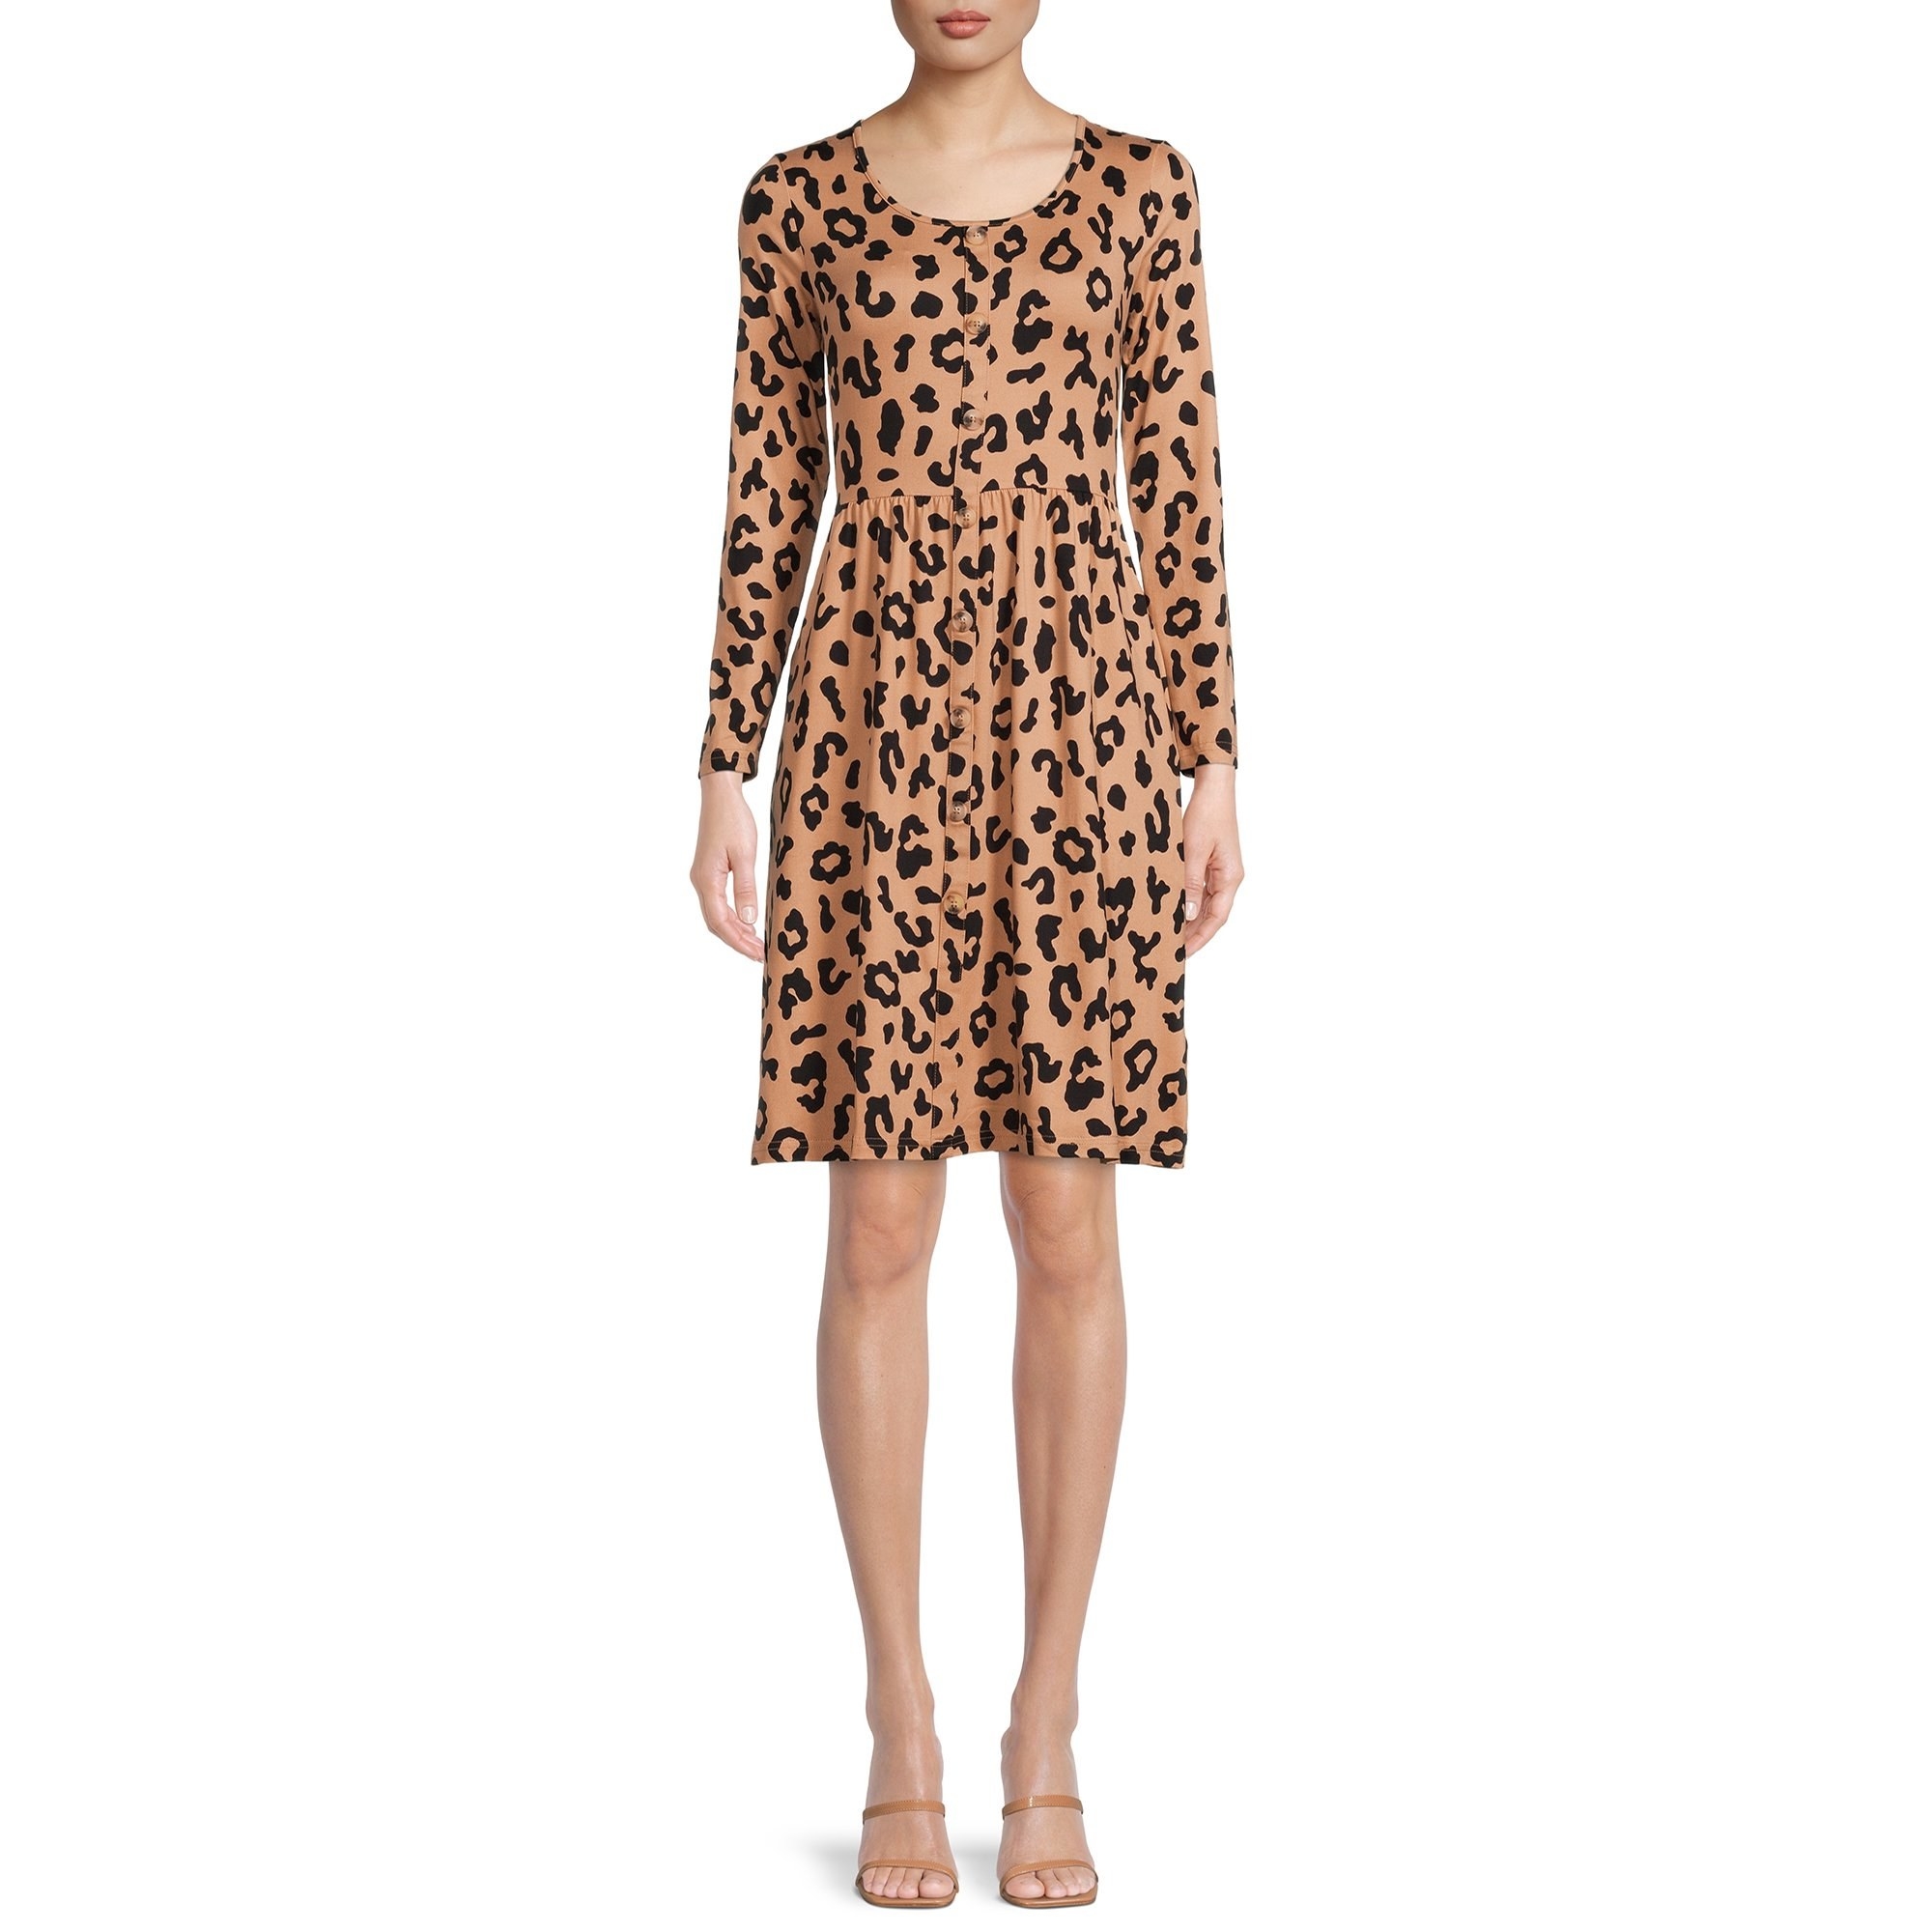 Model wearing long sleeve skater dress in leopard print